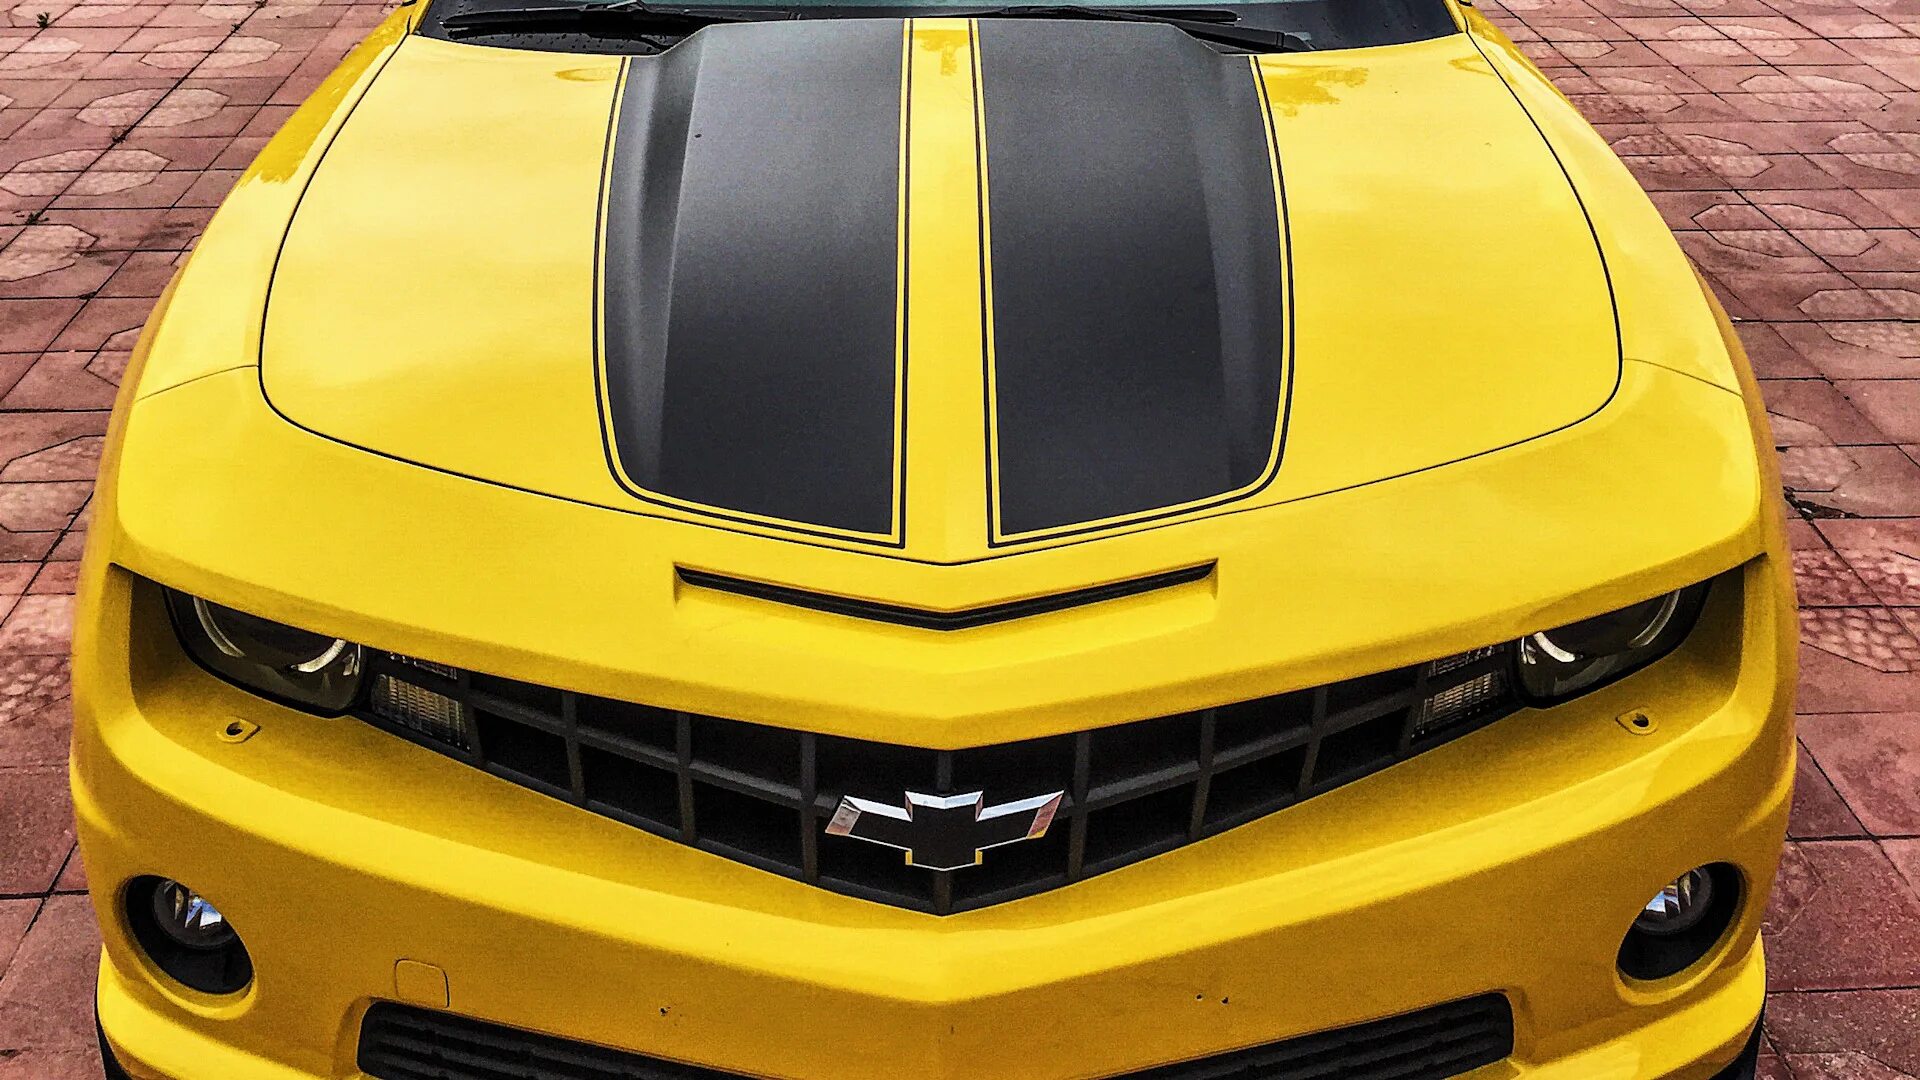 Chevrolet Camaro drive2. Шевроле Камаро желтая Бамблби. Машина с черными полосками